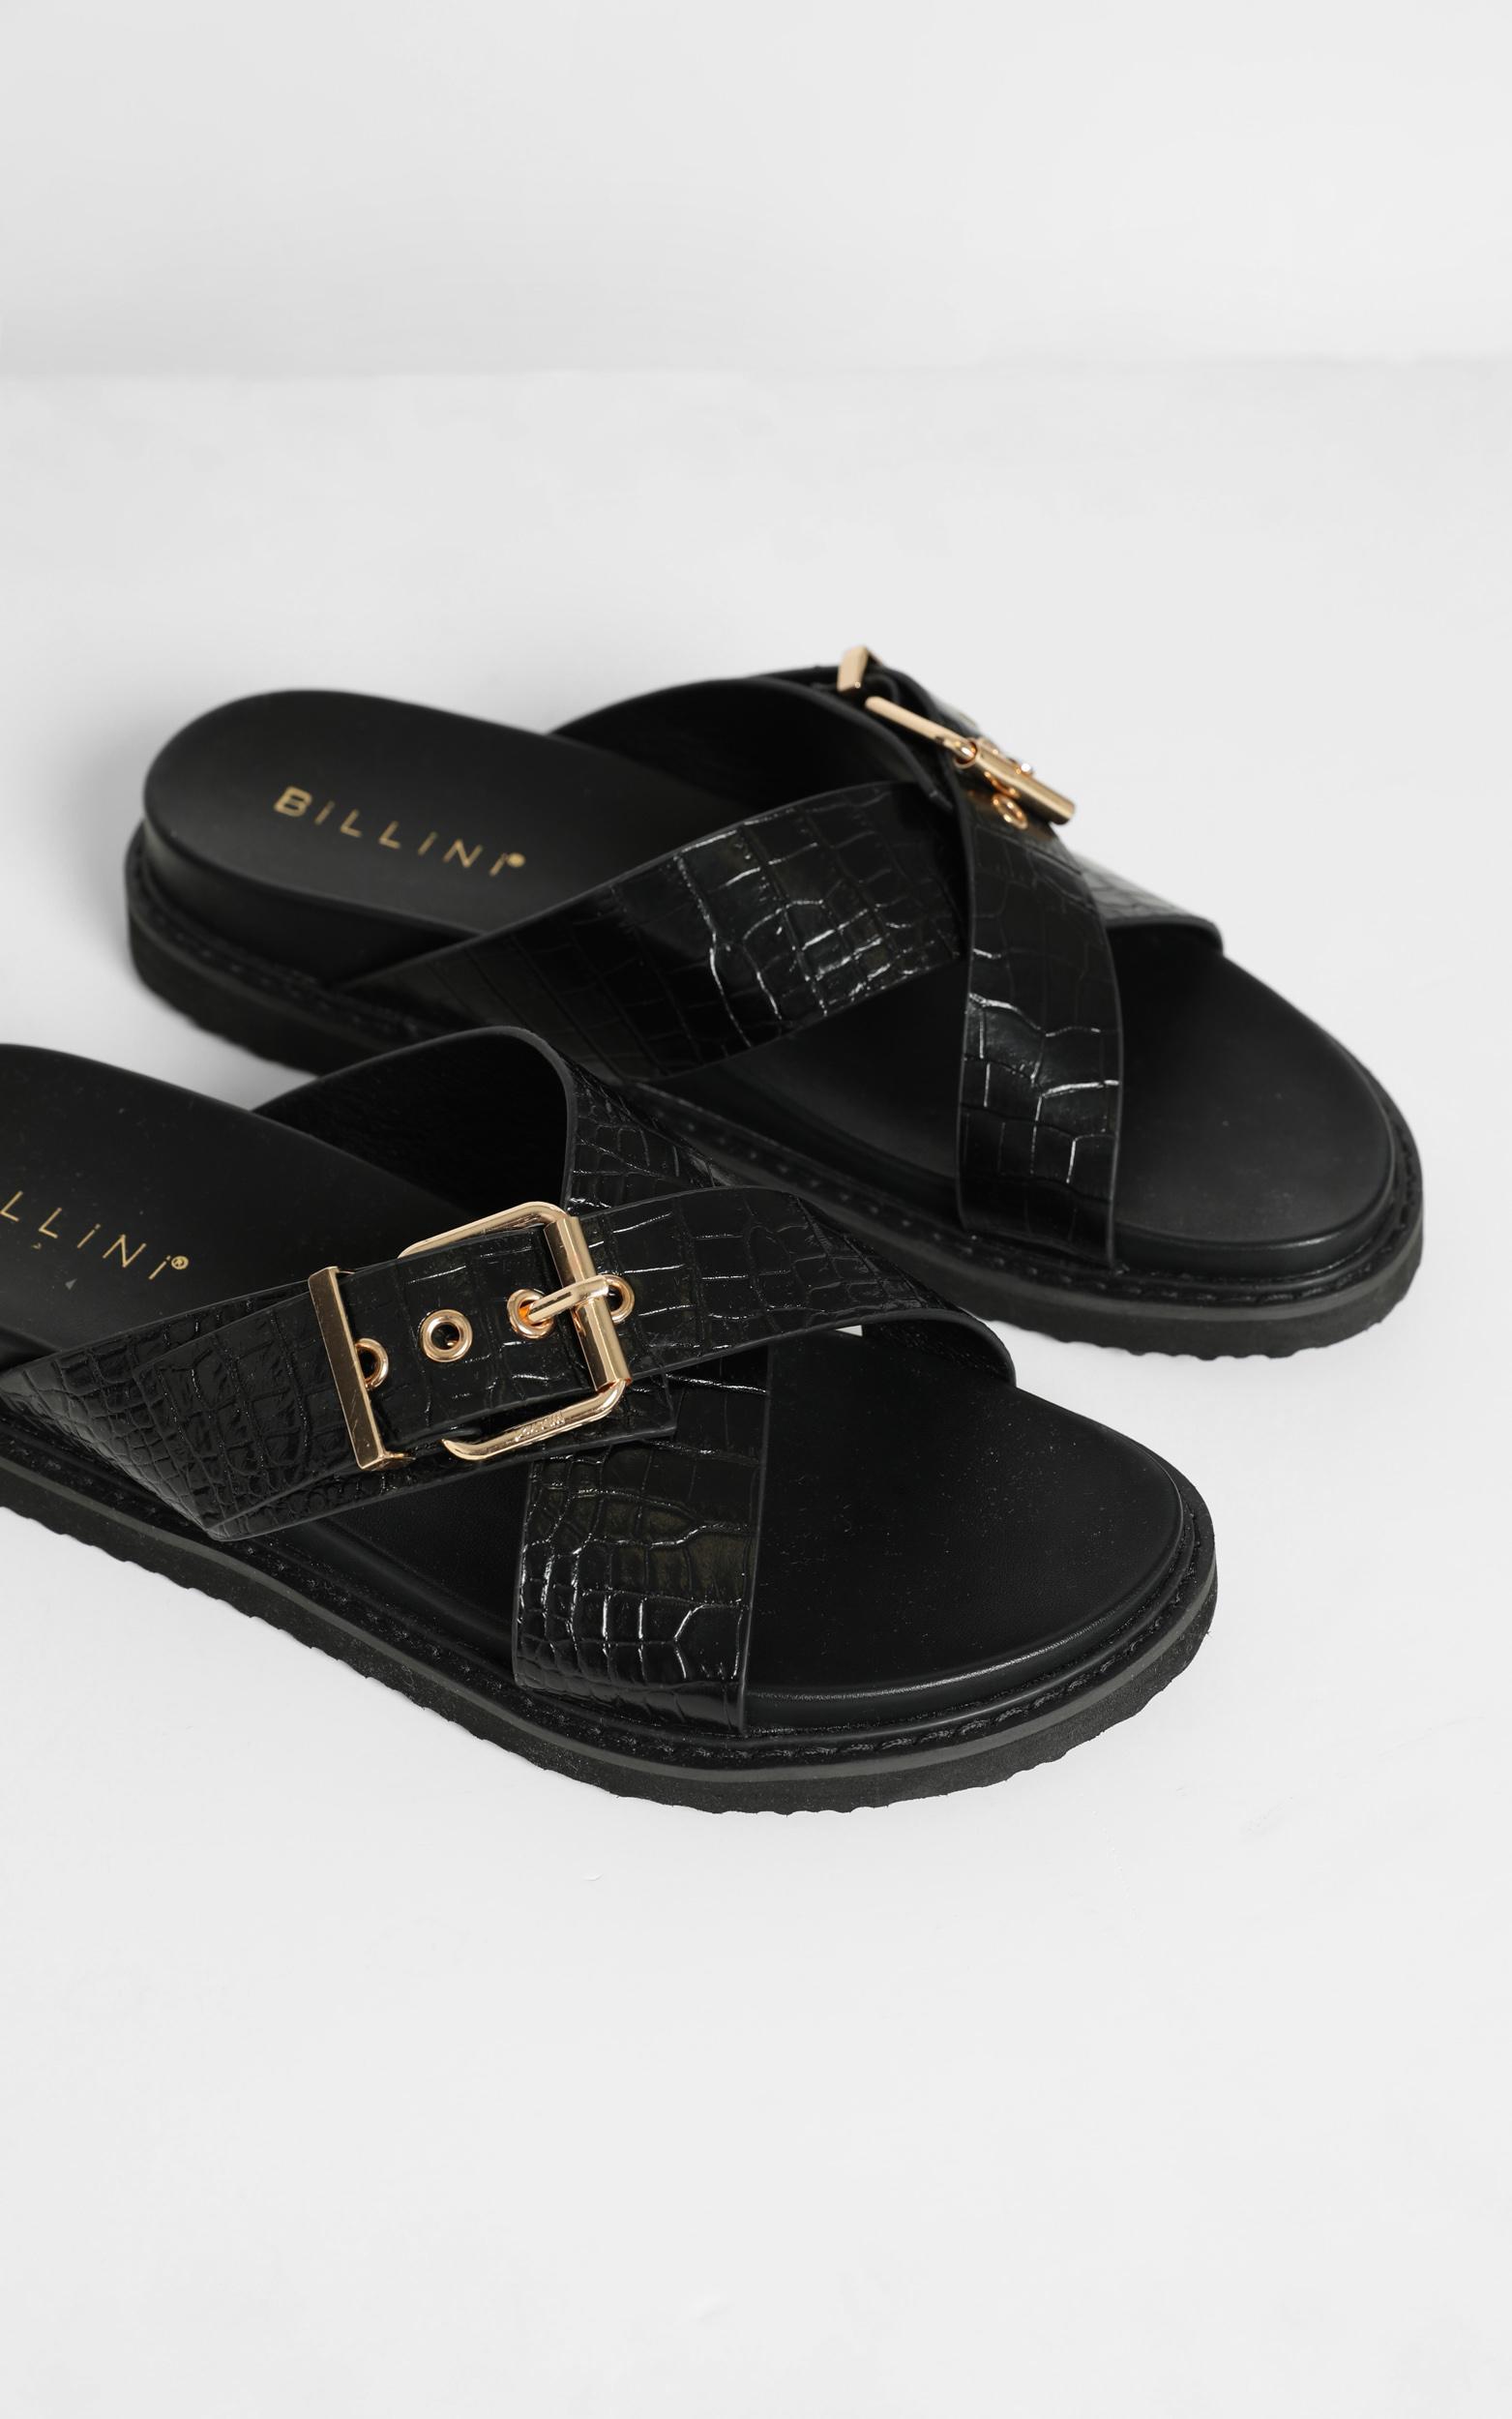 Billini - Zayla Sandals in Black Croc - 05, BLK1, hi-res image number null